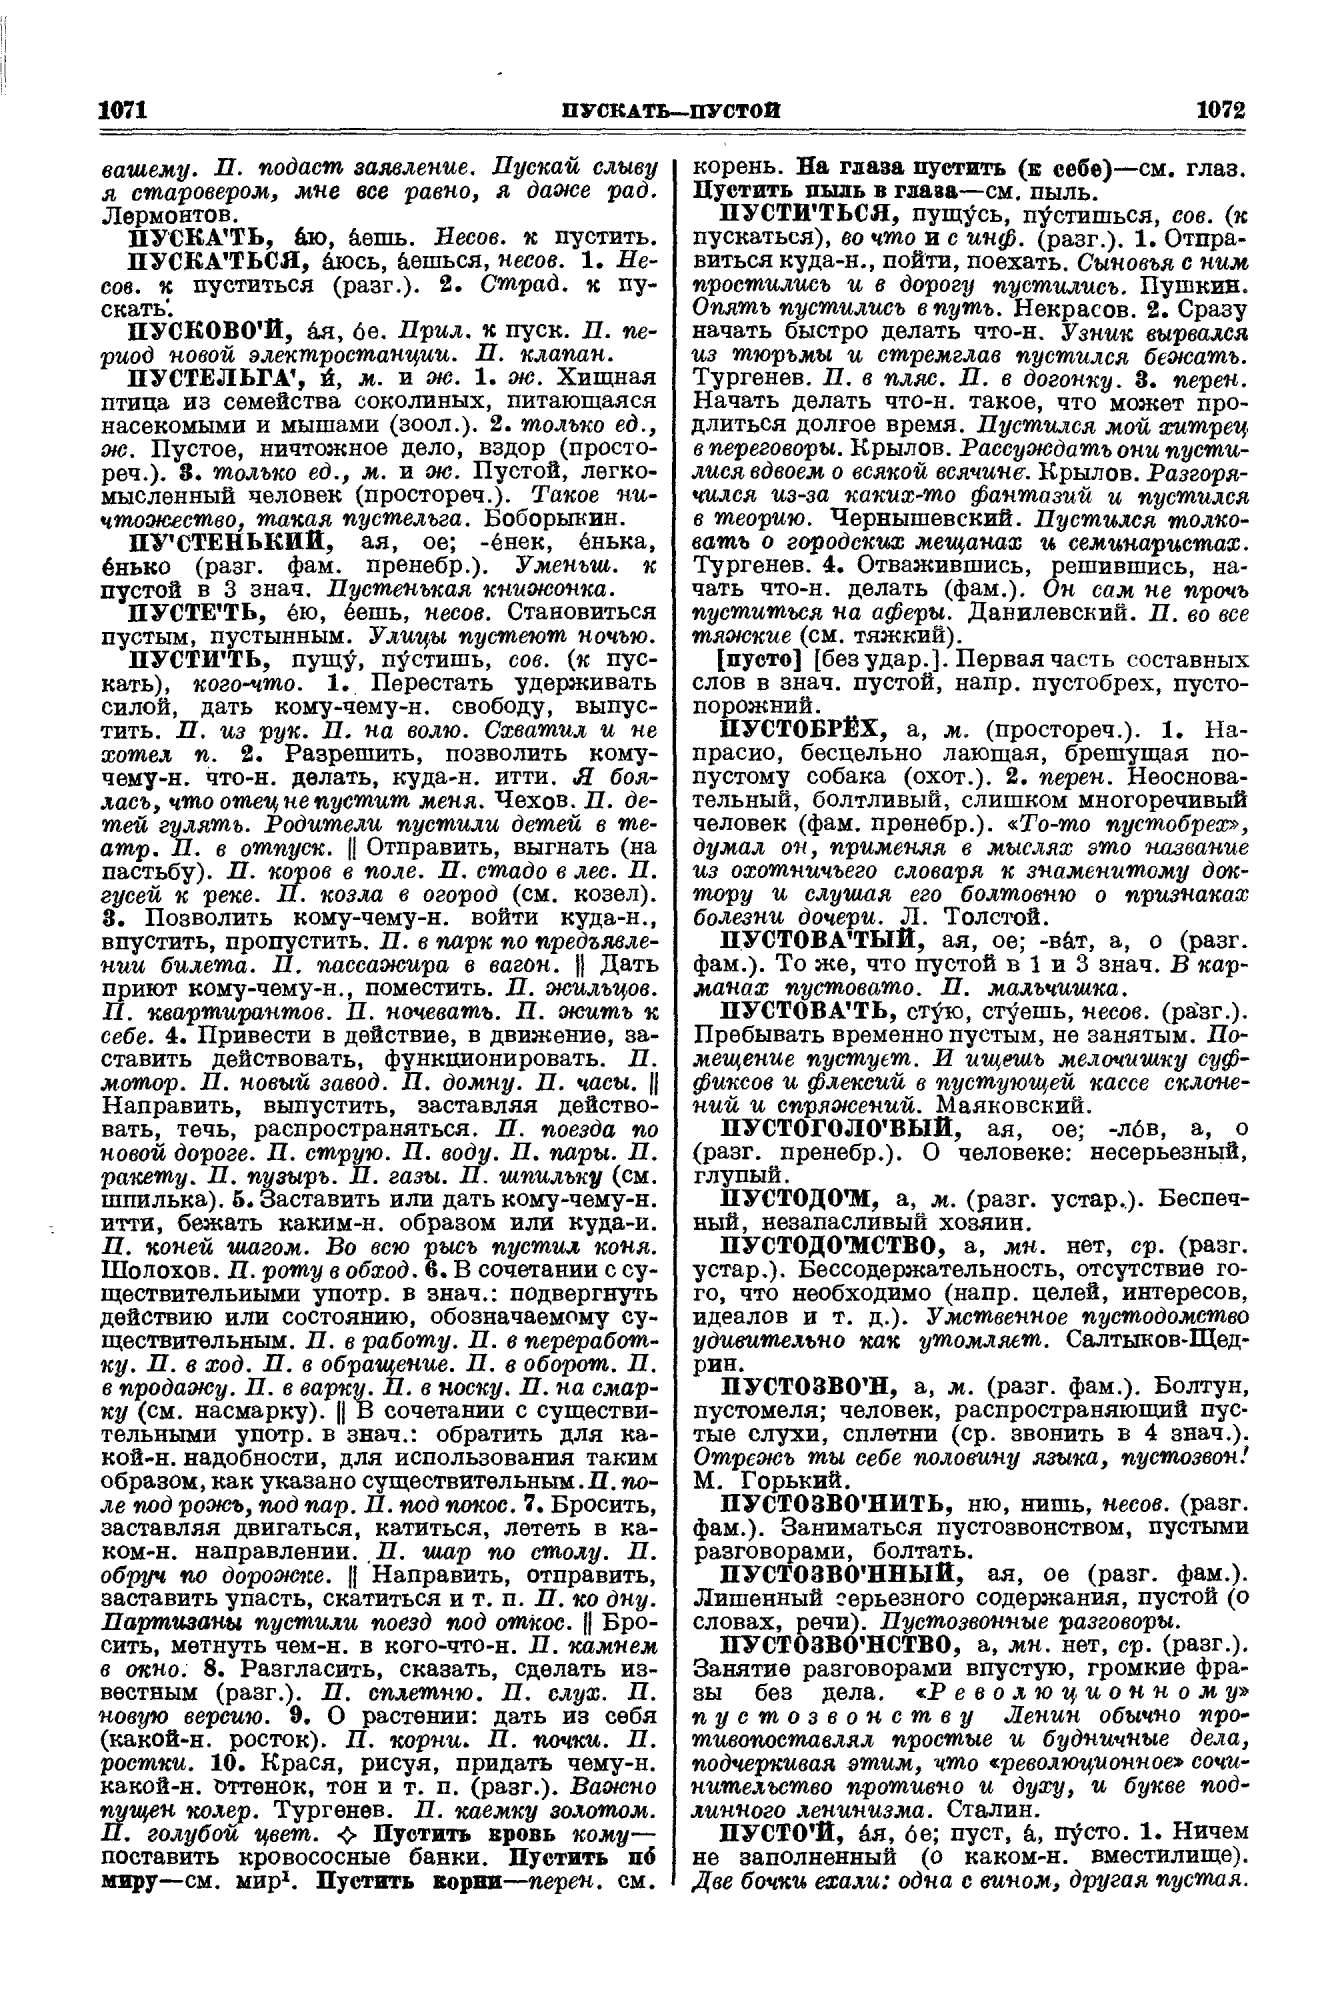 Фотокопия pdf / скан страницы 536 толкового словаря Ушакова (том 3)